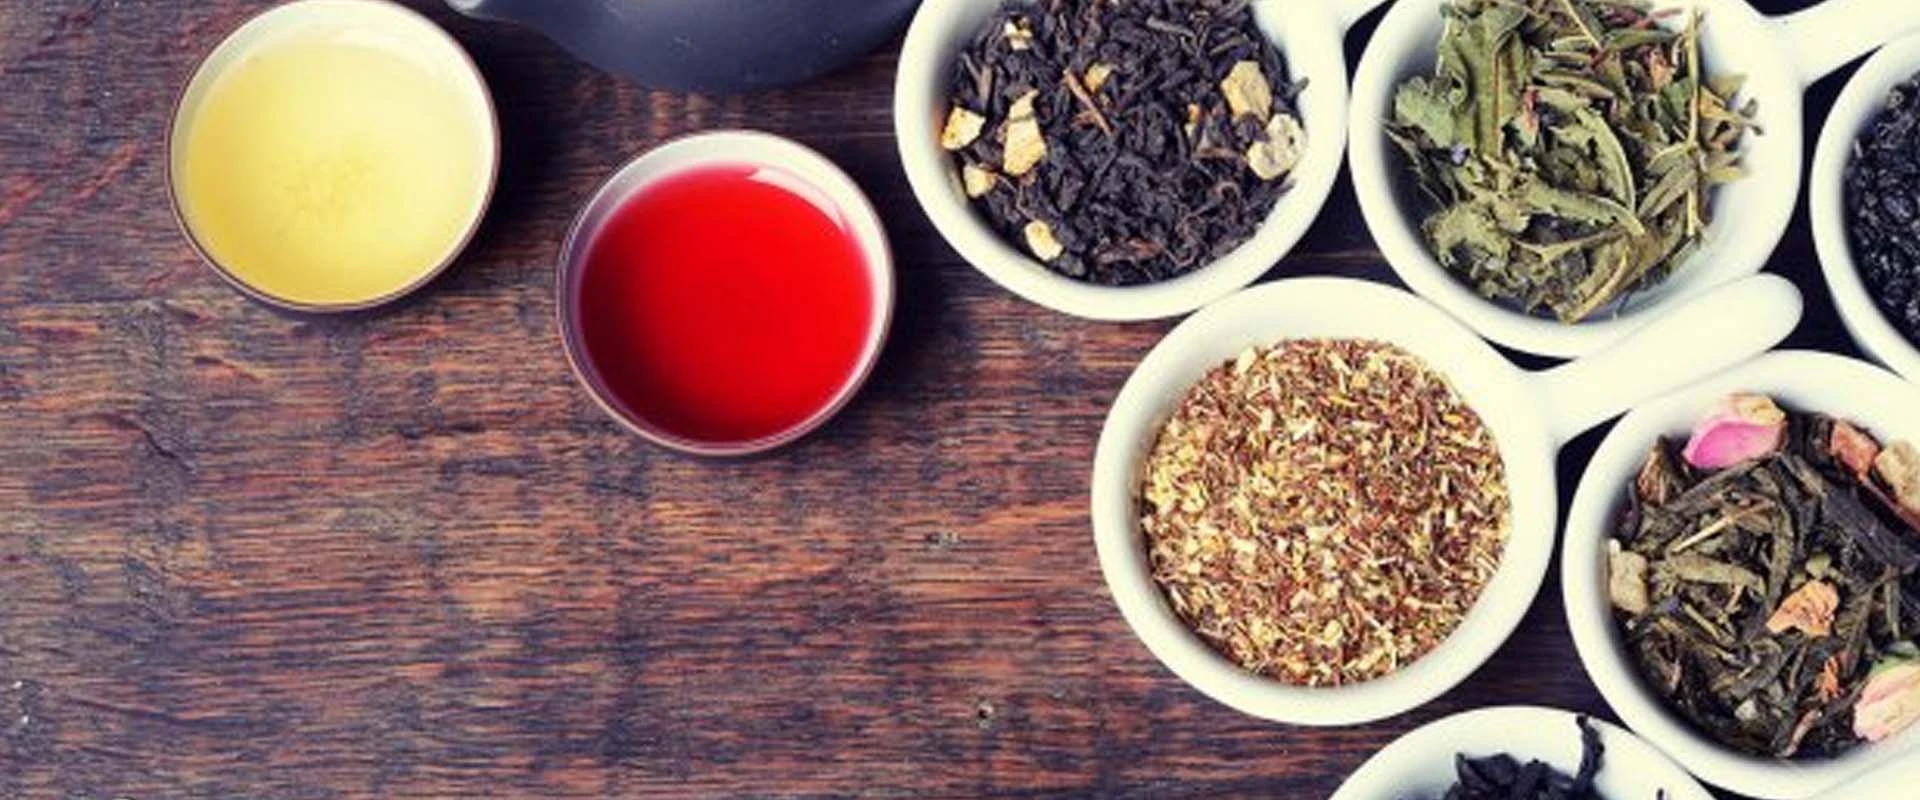 Ingredientes de té y bebida, extractos instantáneos